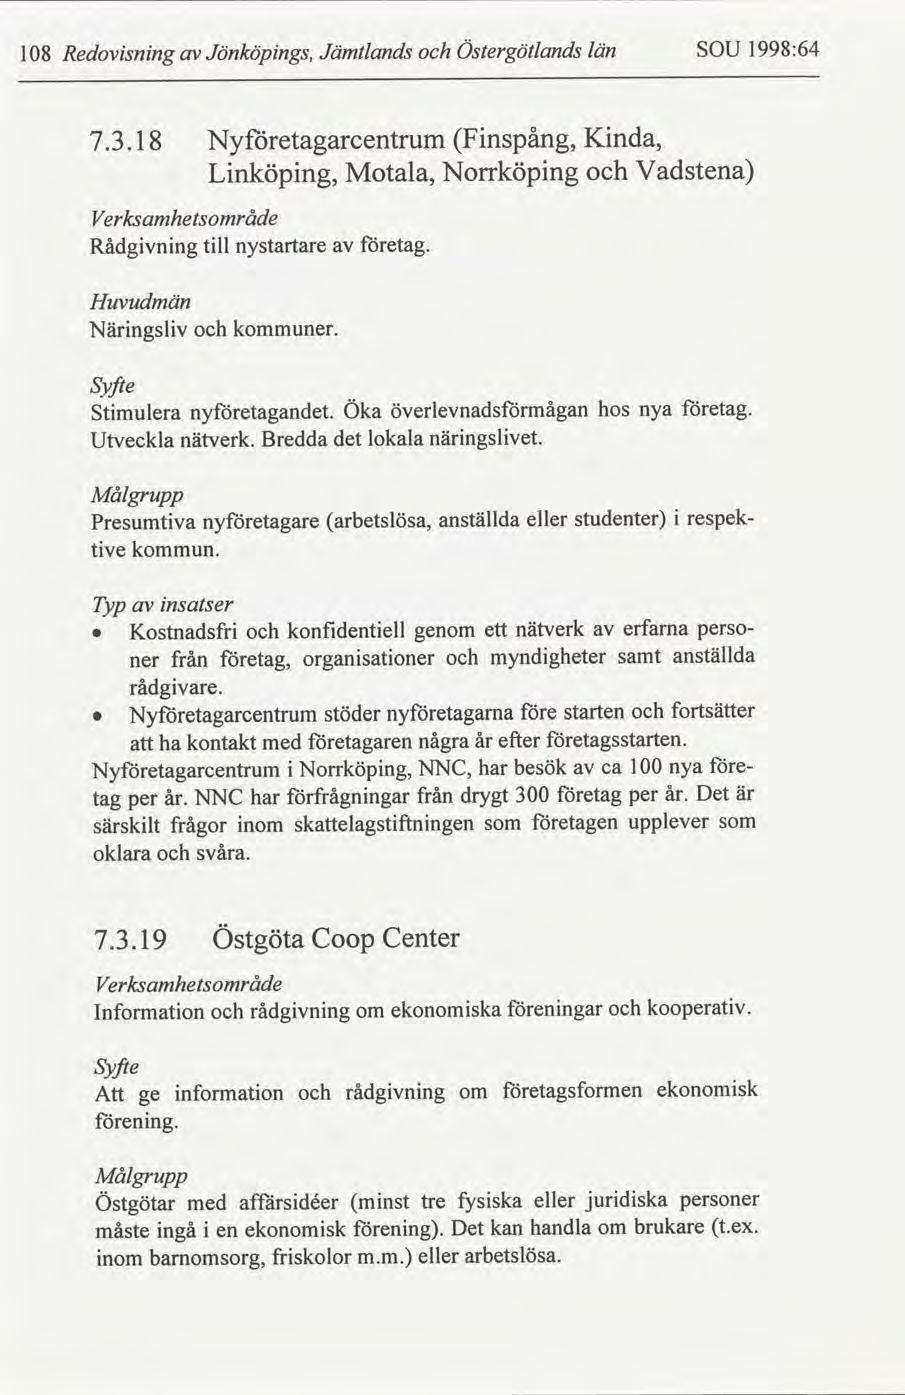 Redovsnng 18 Jönköpngs, Jämtlands Östergötlands län SOU 1998:64 7.3.18 Nyetagarcentrum Lnköpng, Motala, Fnspång, Norrköpng Knda, Vadstena Verksamhetråde tll Rådgvnng nystartare etag.